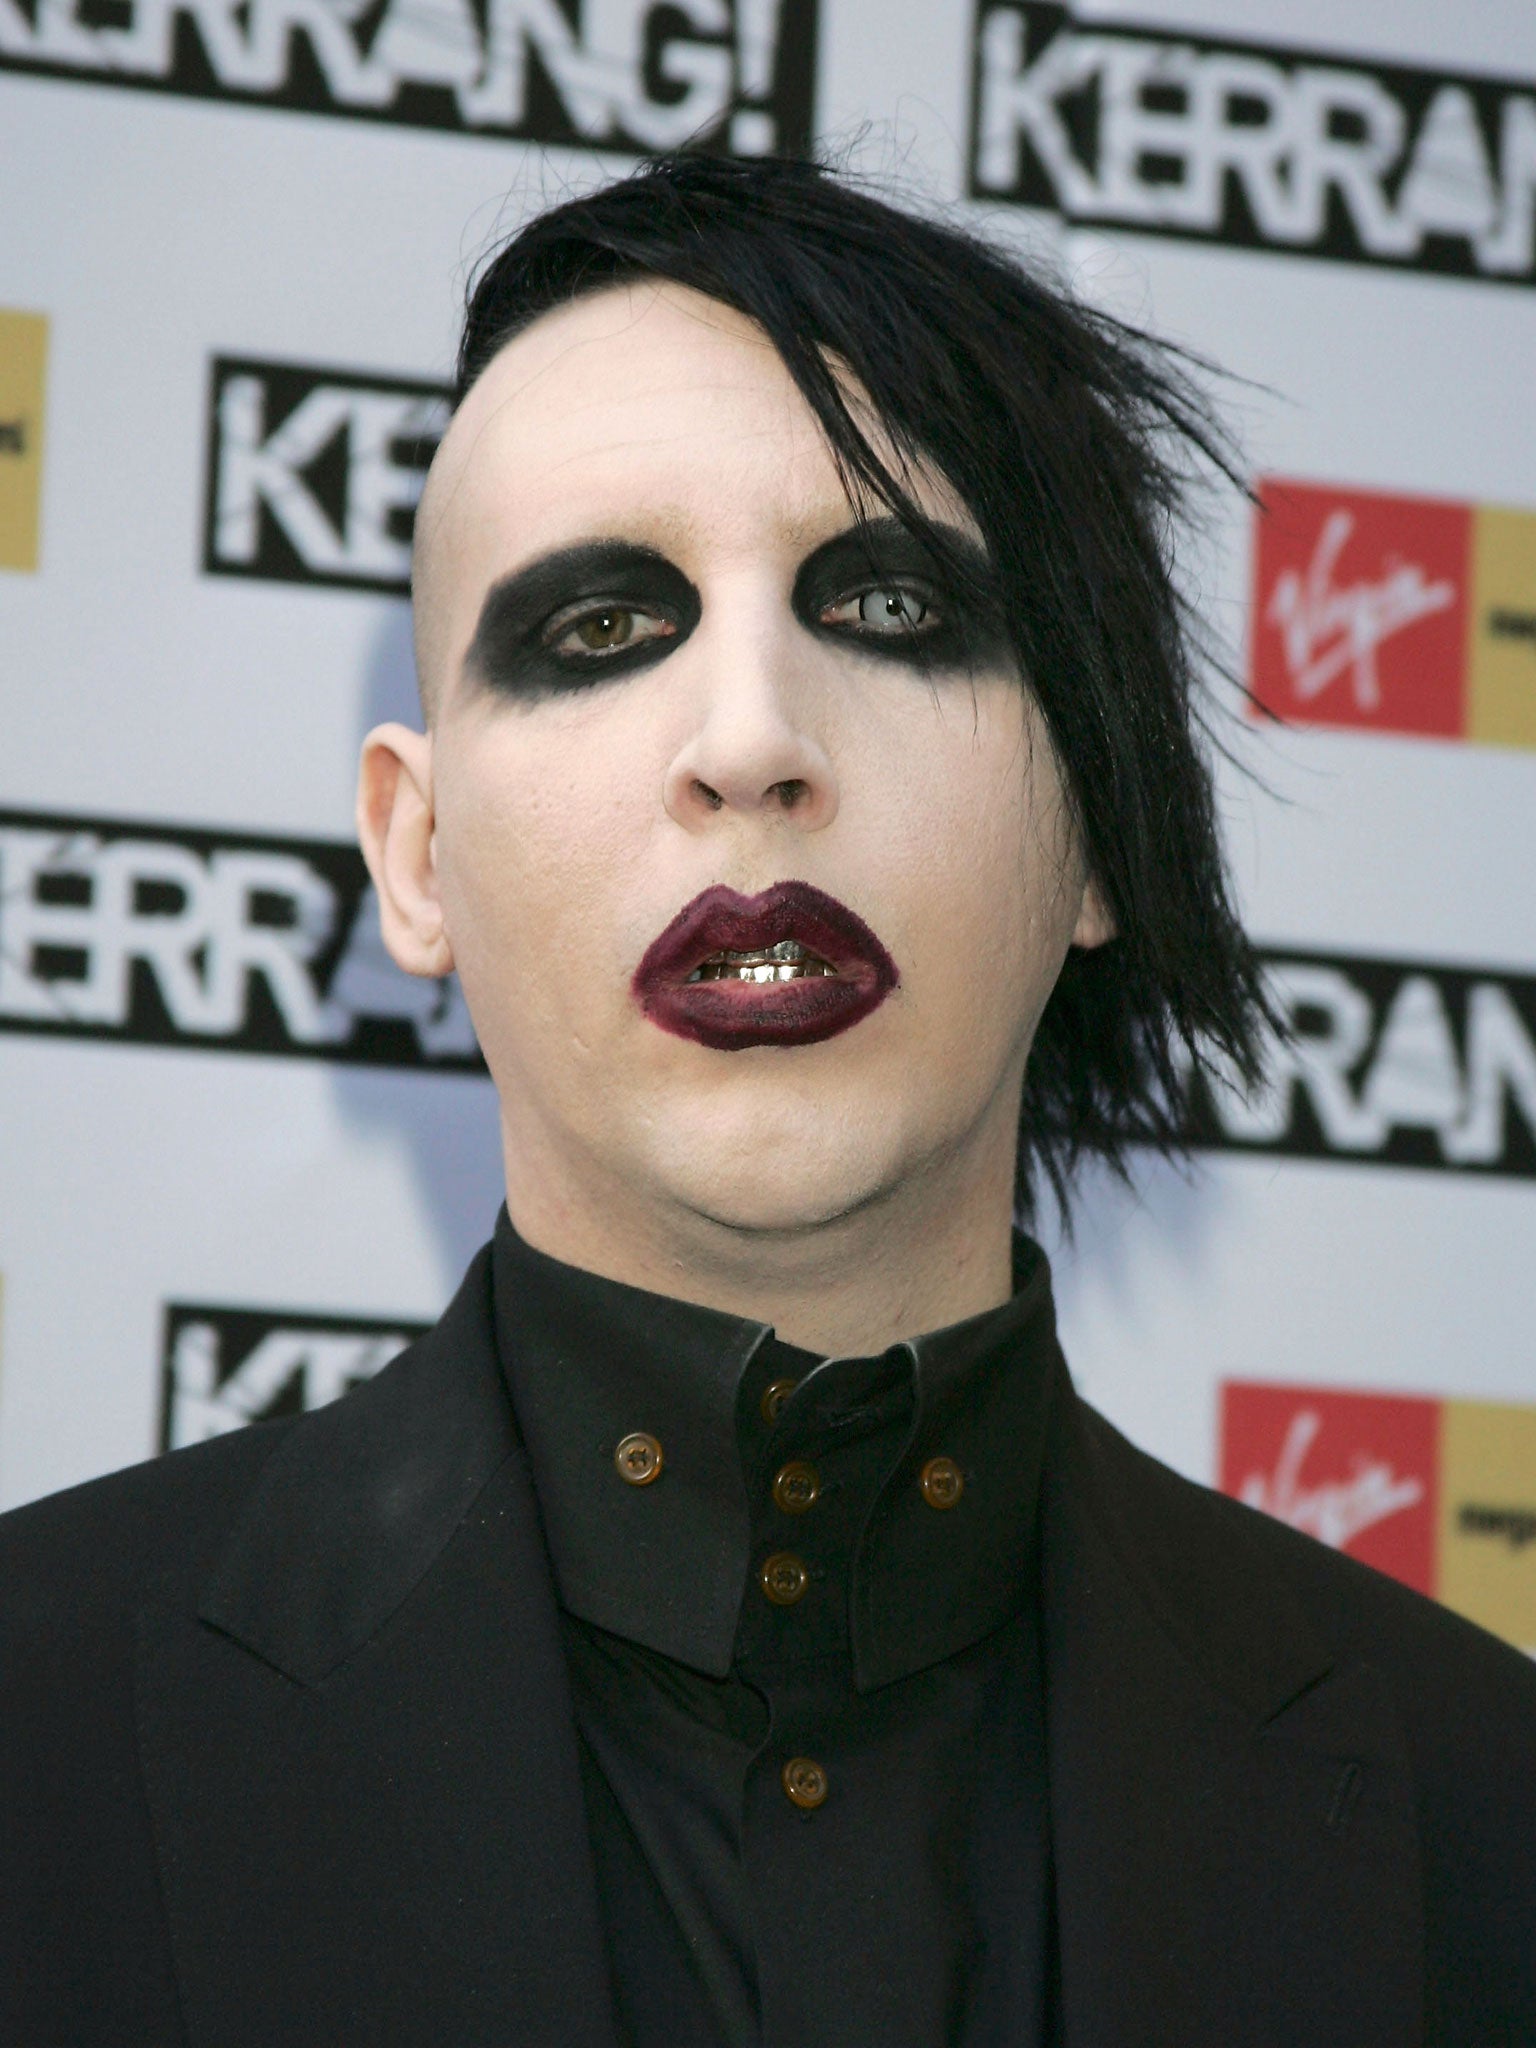 Marilyn Manson at the 2005 Kerrang Awards